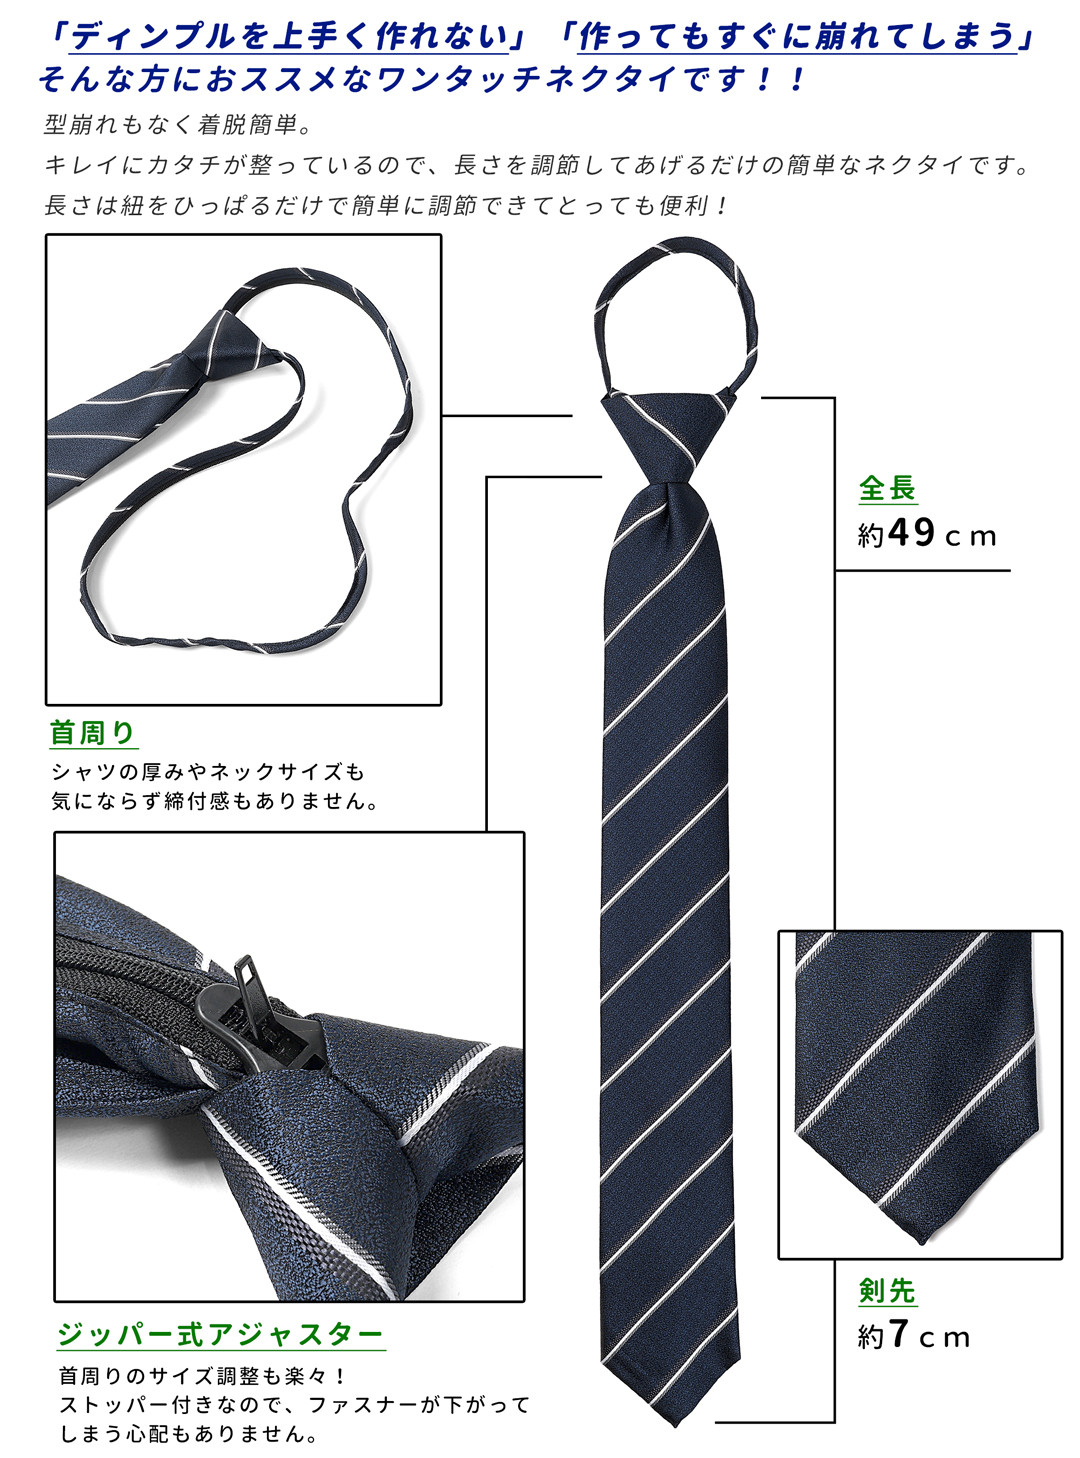  одним движением галстук мужской галстук одним движением Quick галстук полоса рисунок углубление имеется вмятина простой модный стиль 